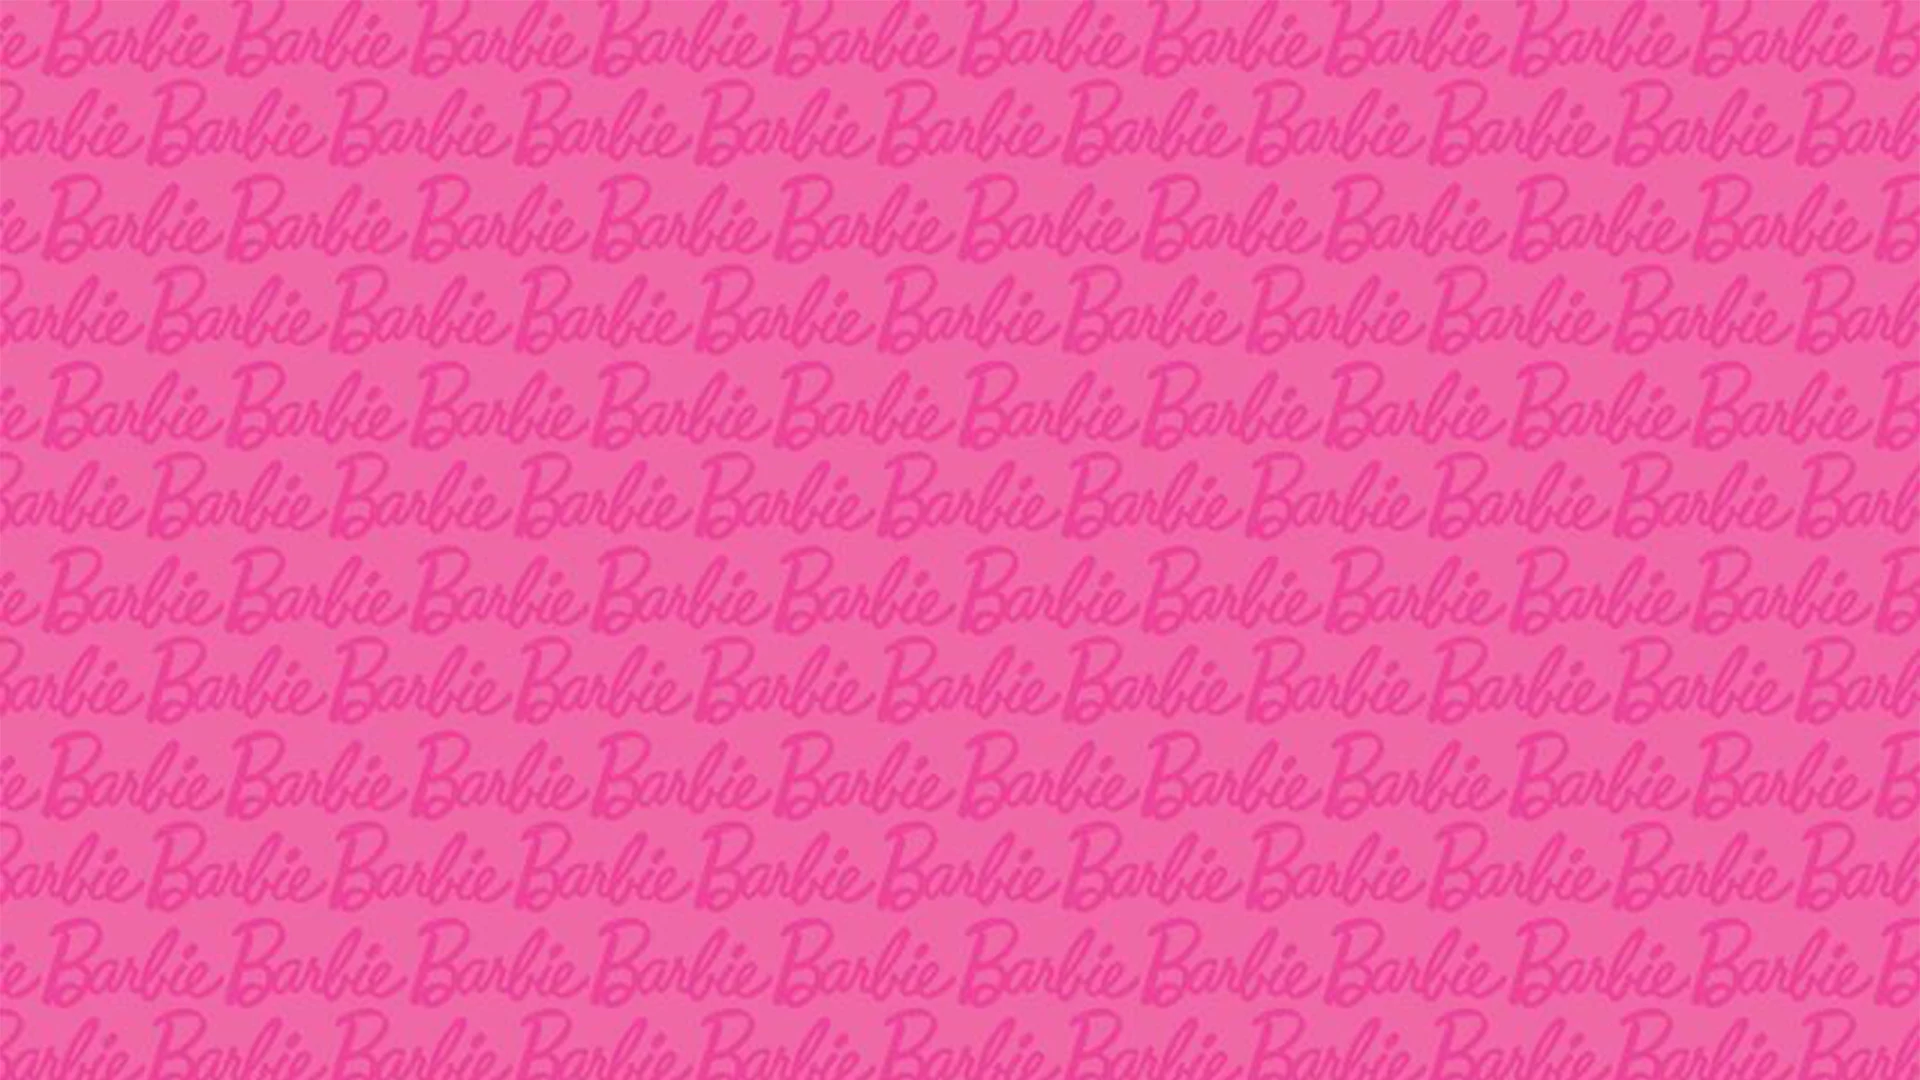 Visual Mágico da Barbie - Moda::Appstore for Android